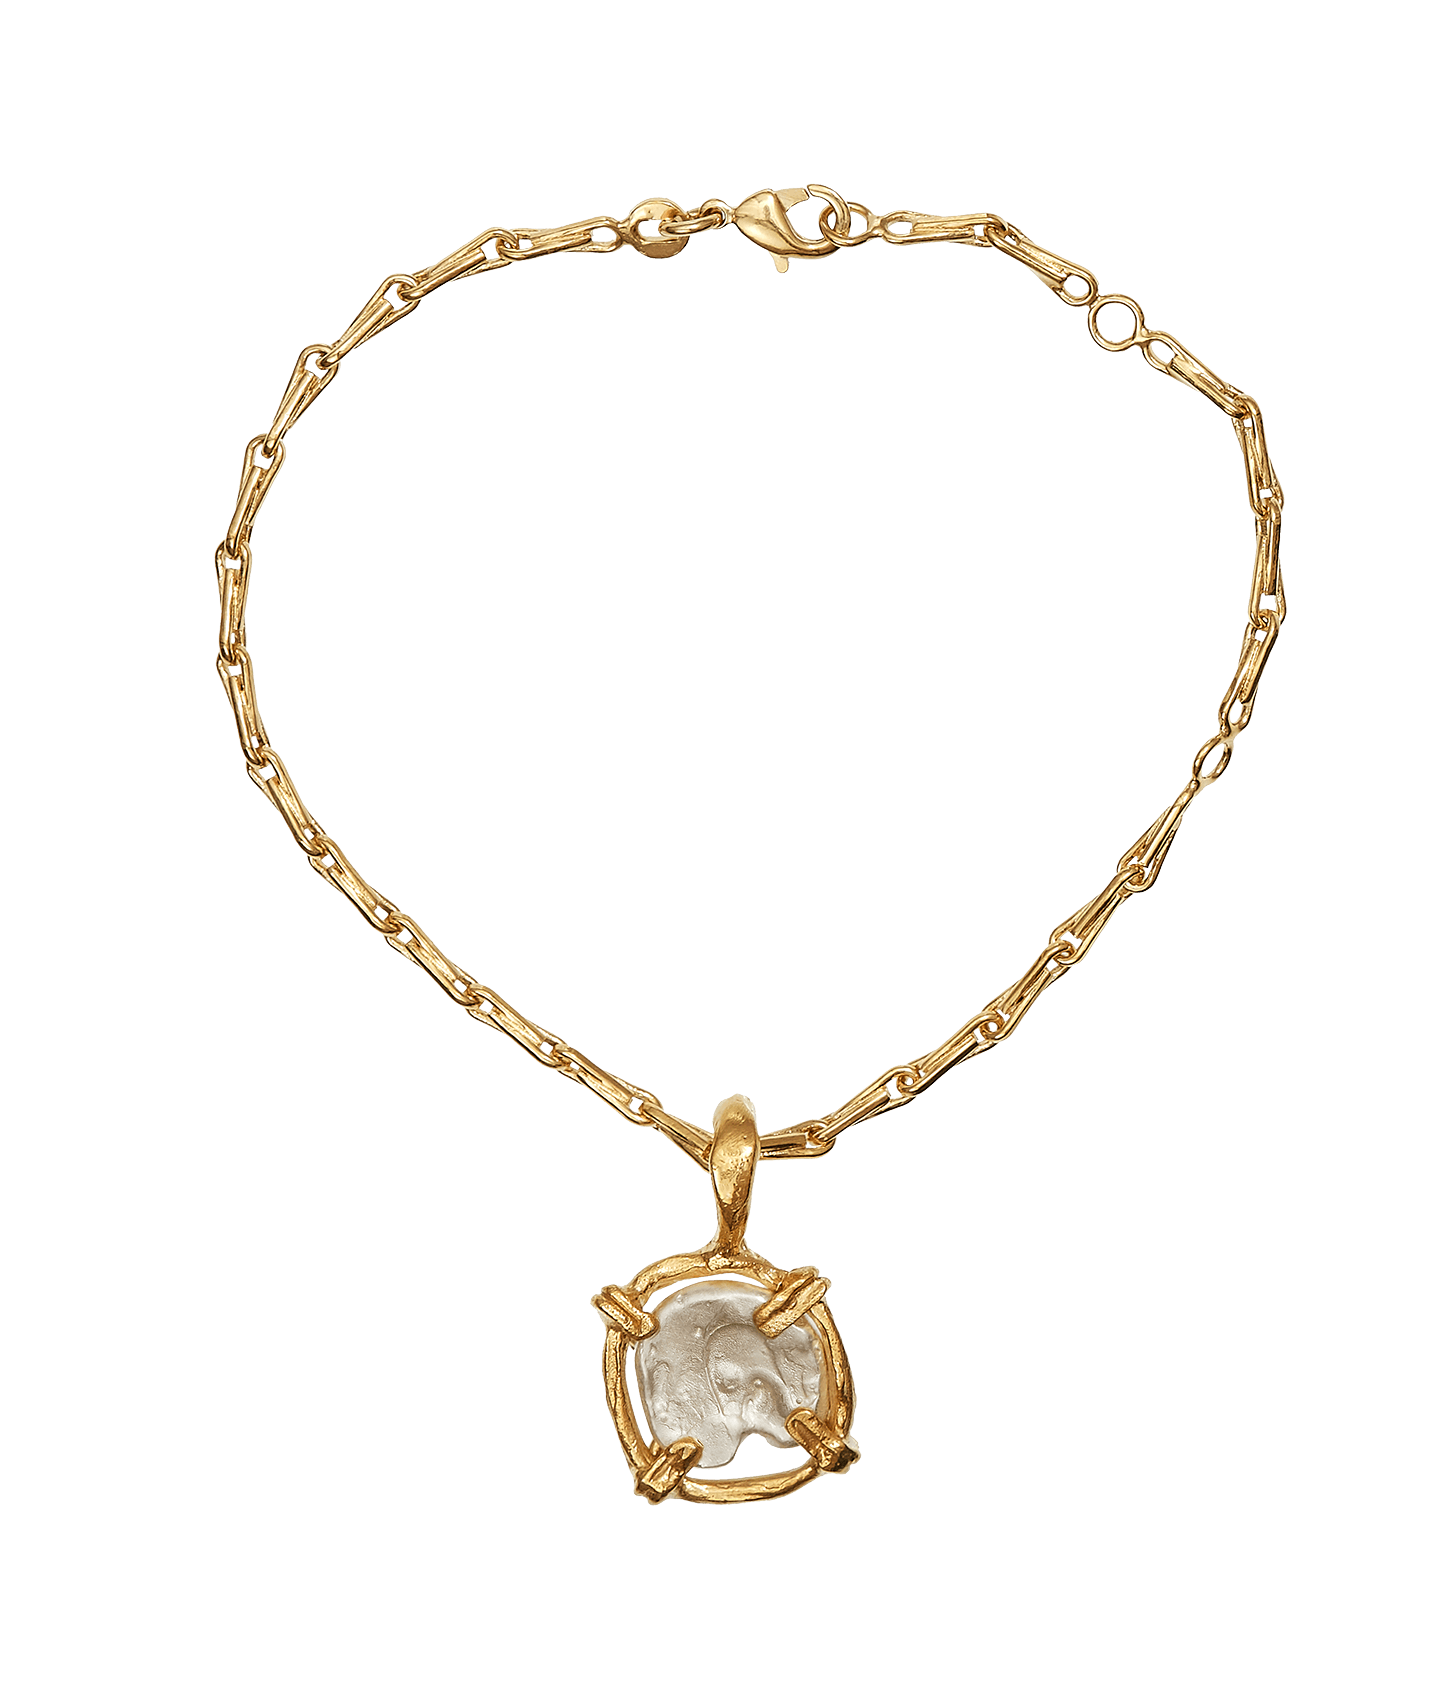 The Gilded Frame Bracelet